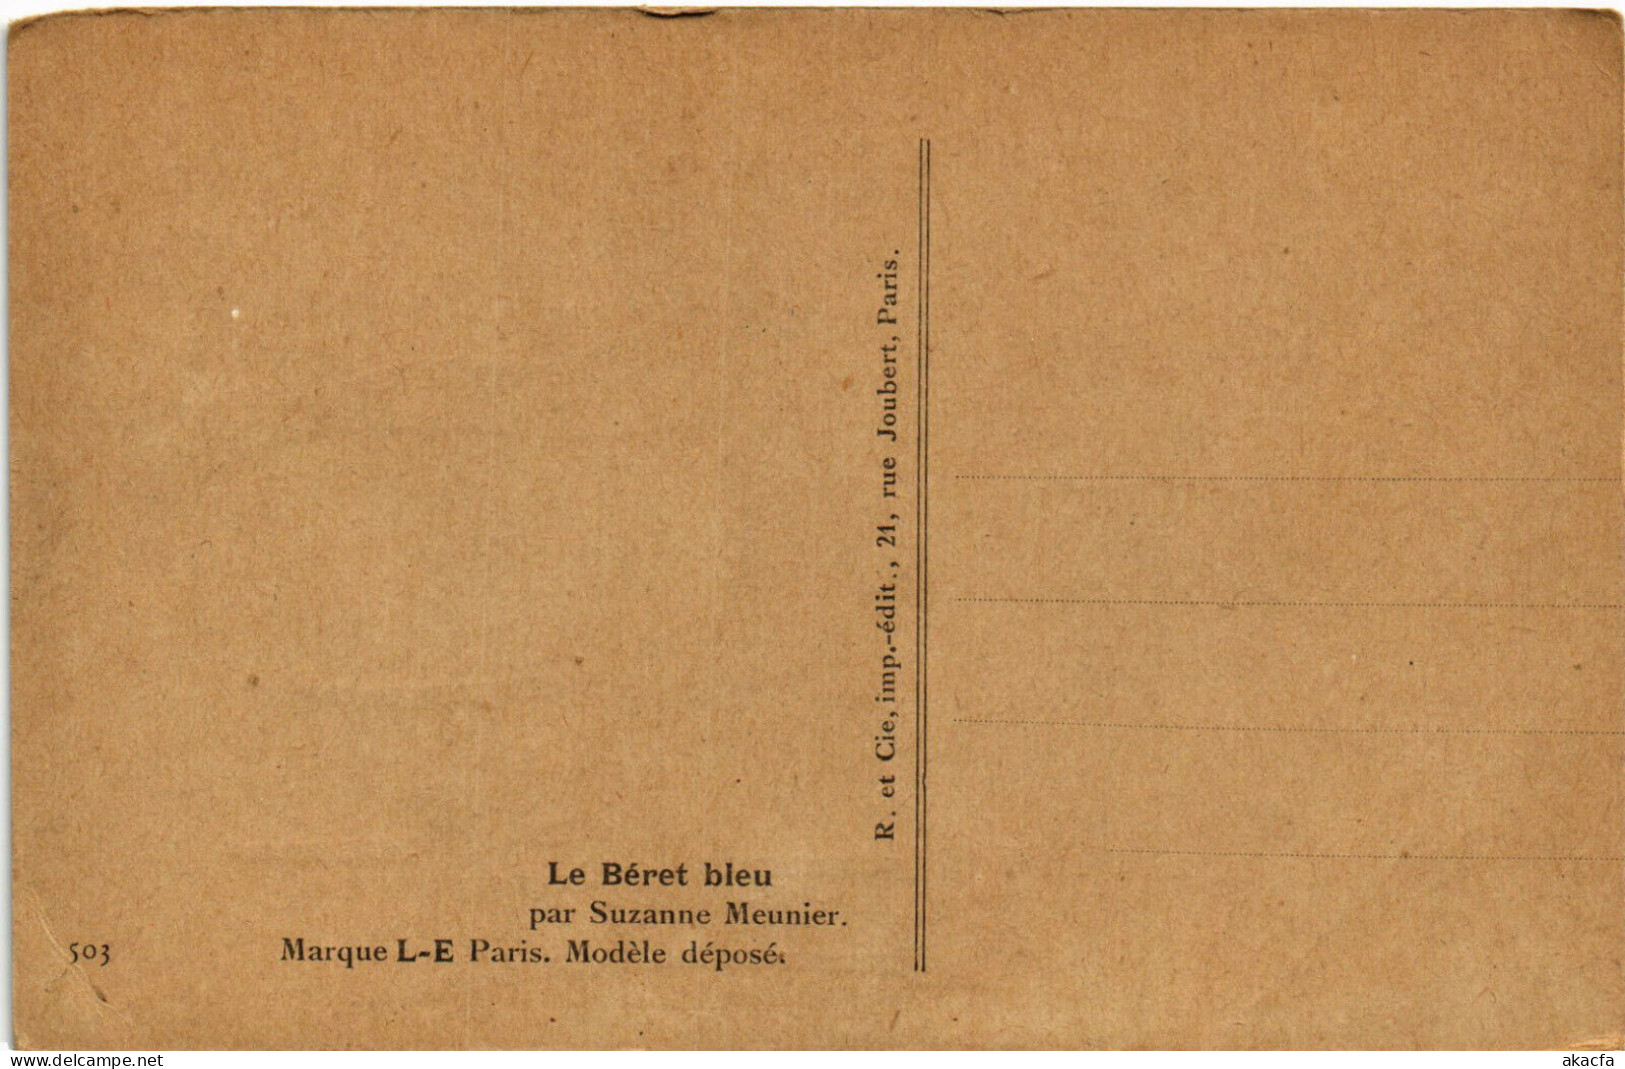 PC ARTIST SIGNED, MEUNIER, LE BÉRET BLEU, Vintage Postcard (b51676) - Meunier, S.